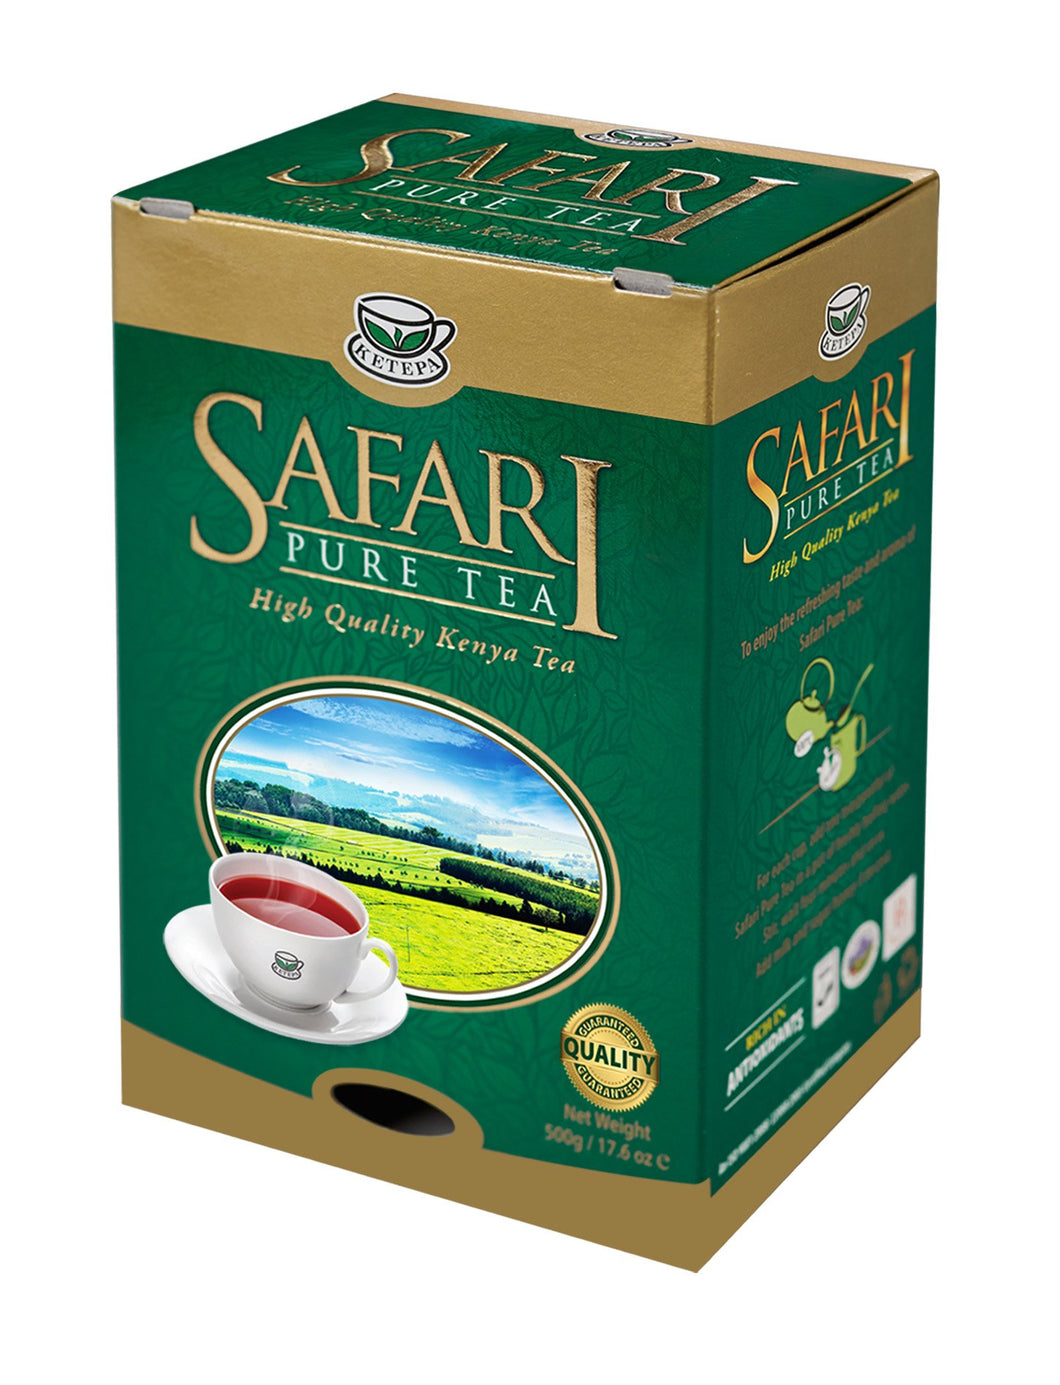 Kenya Safari Pure Tea, 500g